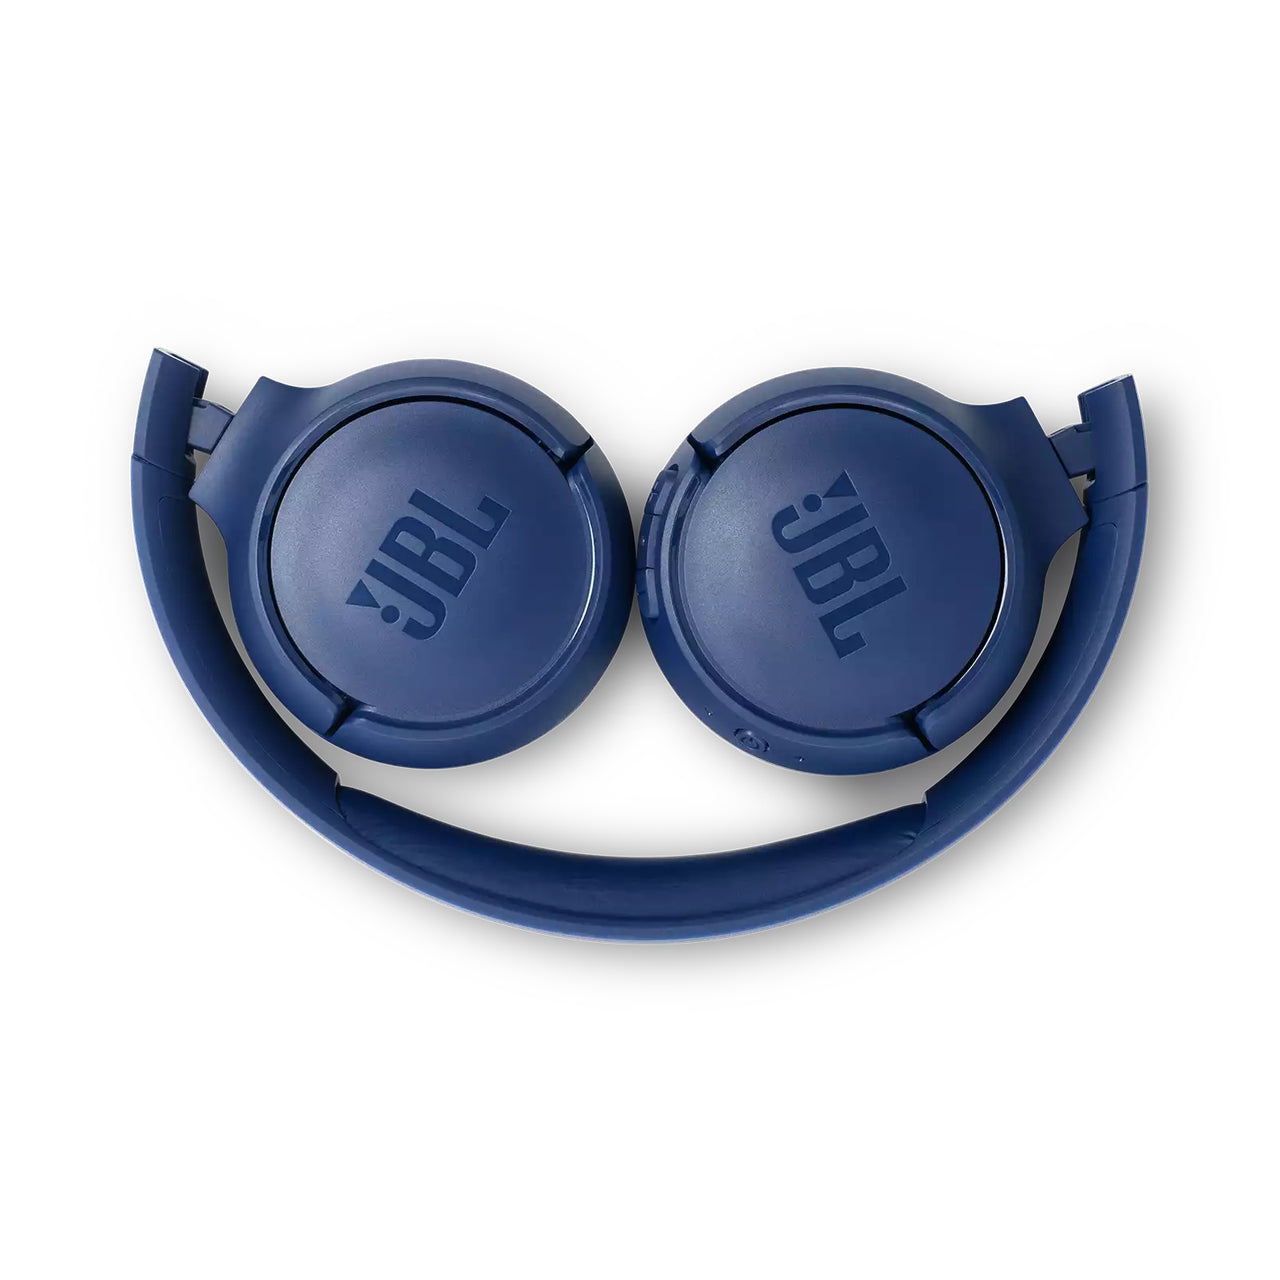 JBL T500 Wireless Bluetooth On Ear Headphones - Blue